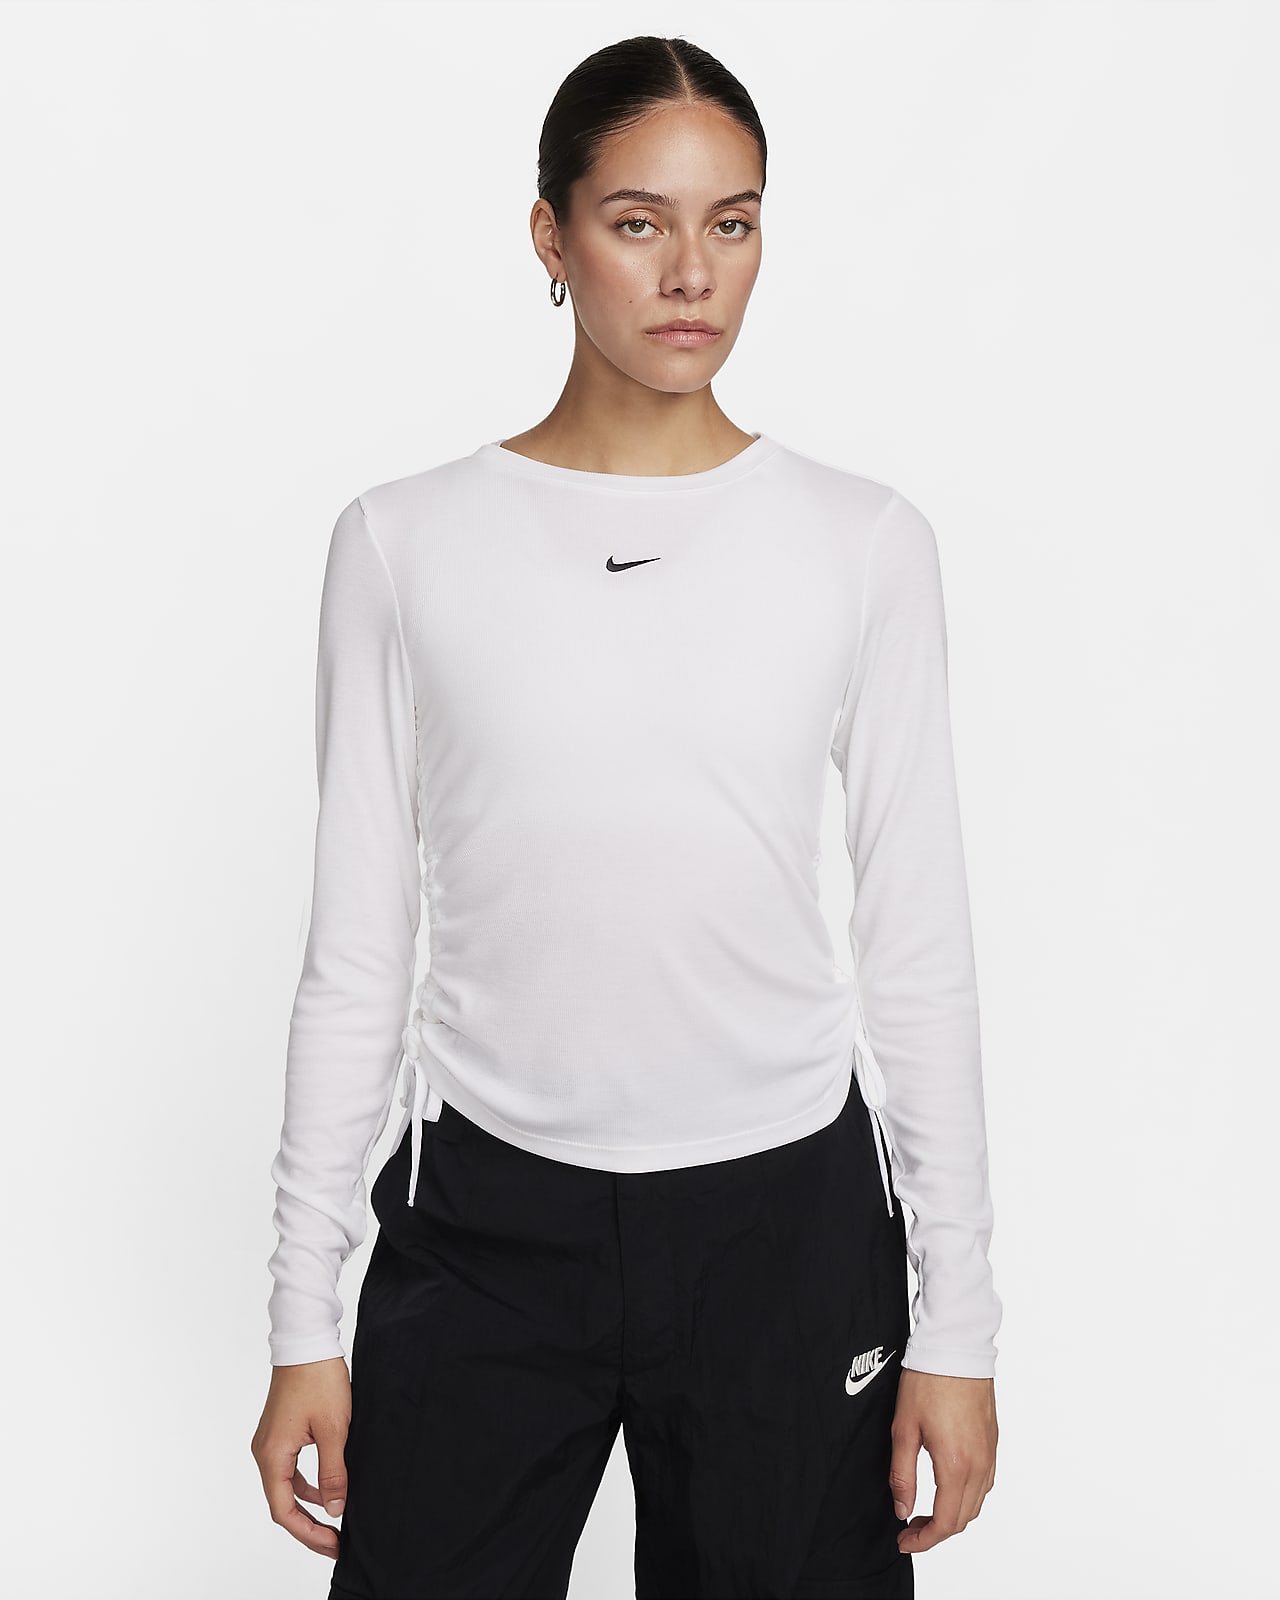 Crop top Mod à manches longues côtelé Nike Sportswear Essential pour femme